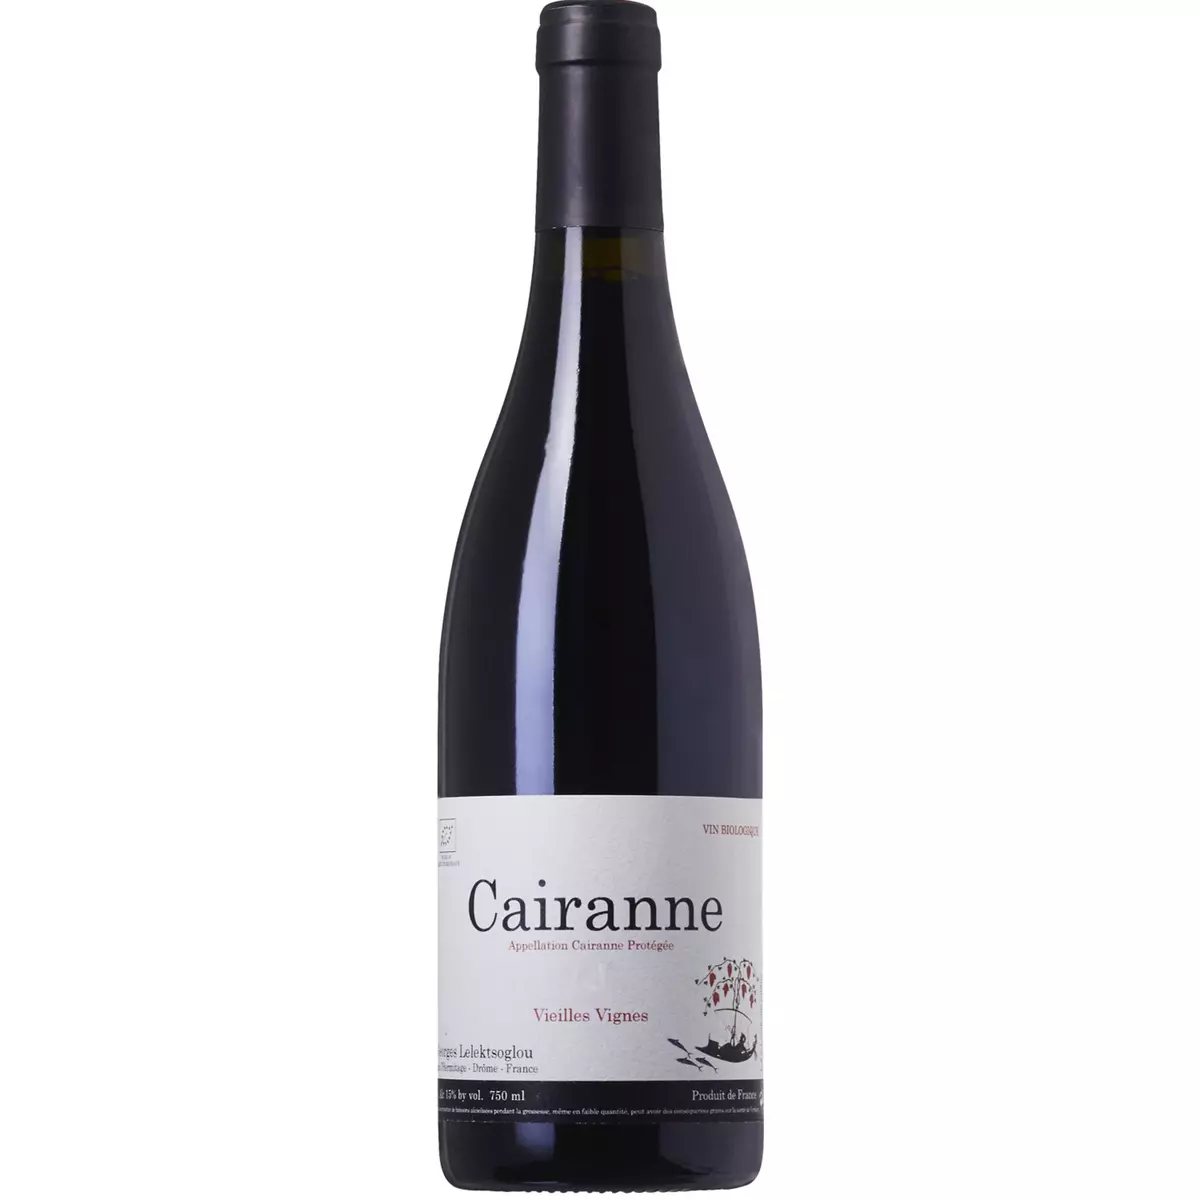 Vin rouge AOP Cairanne Bio Vieilles Vignes Georges Leleksoglou 2016 75cl